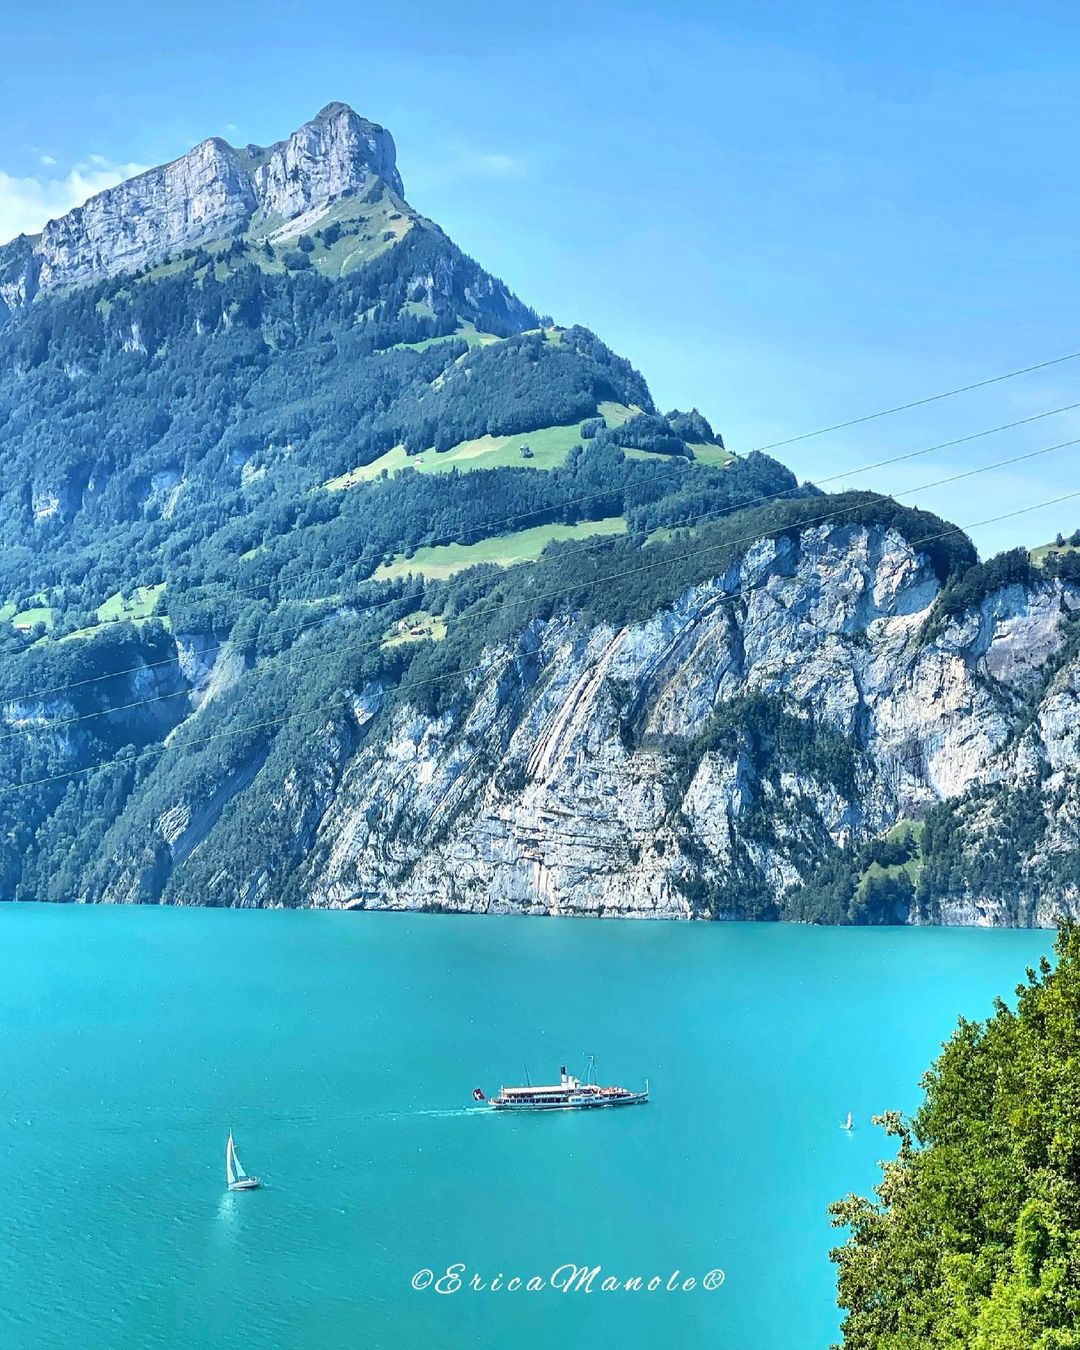 Фантастические пейзажи планеты Земля на снимках тревел-фотографа Эрика, чтобы, Читать, подписчиков, более, Instagram, делится, работами, Своими, пейзажи, городские, природные, красивые, самые, запечатлеть, Швейцарии, Маноле, путешествует, ландшафтов, природы